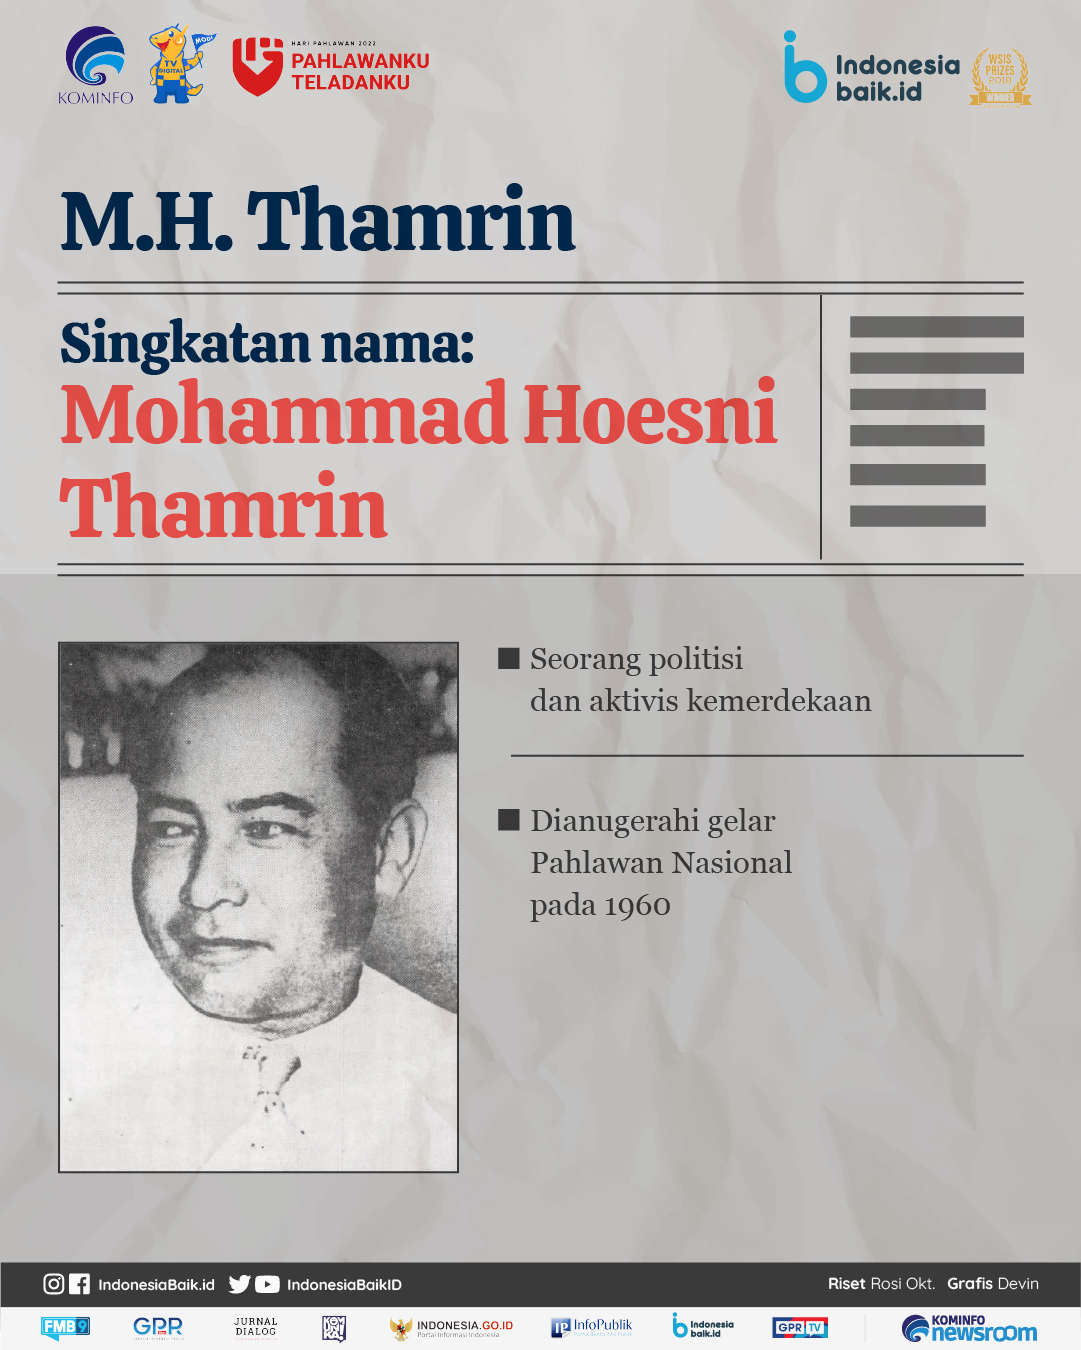 MH Thamrin adalah aktivis kemerdekaan yang namanya diabadikan menjadi jalan di Jakarta